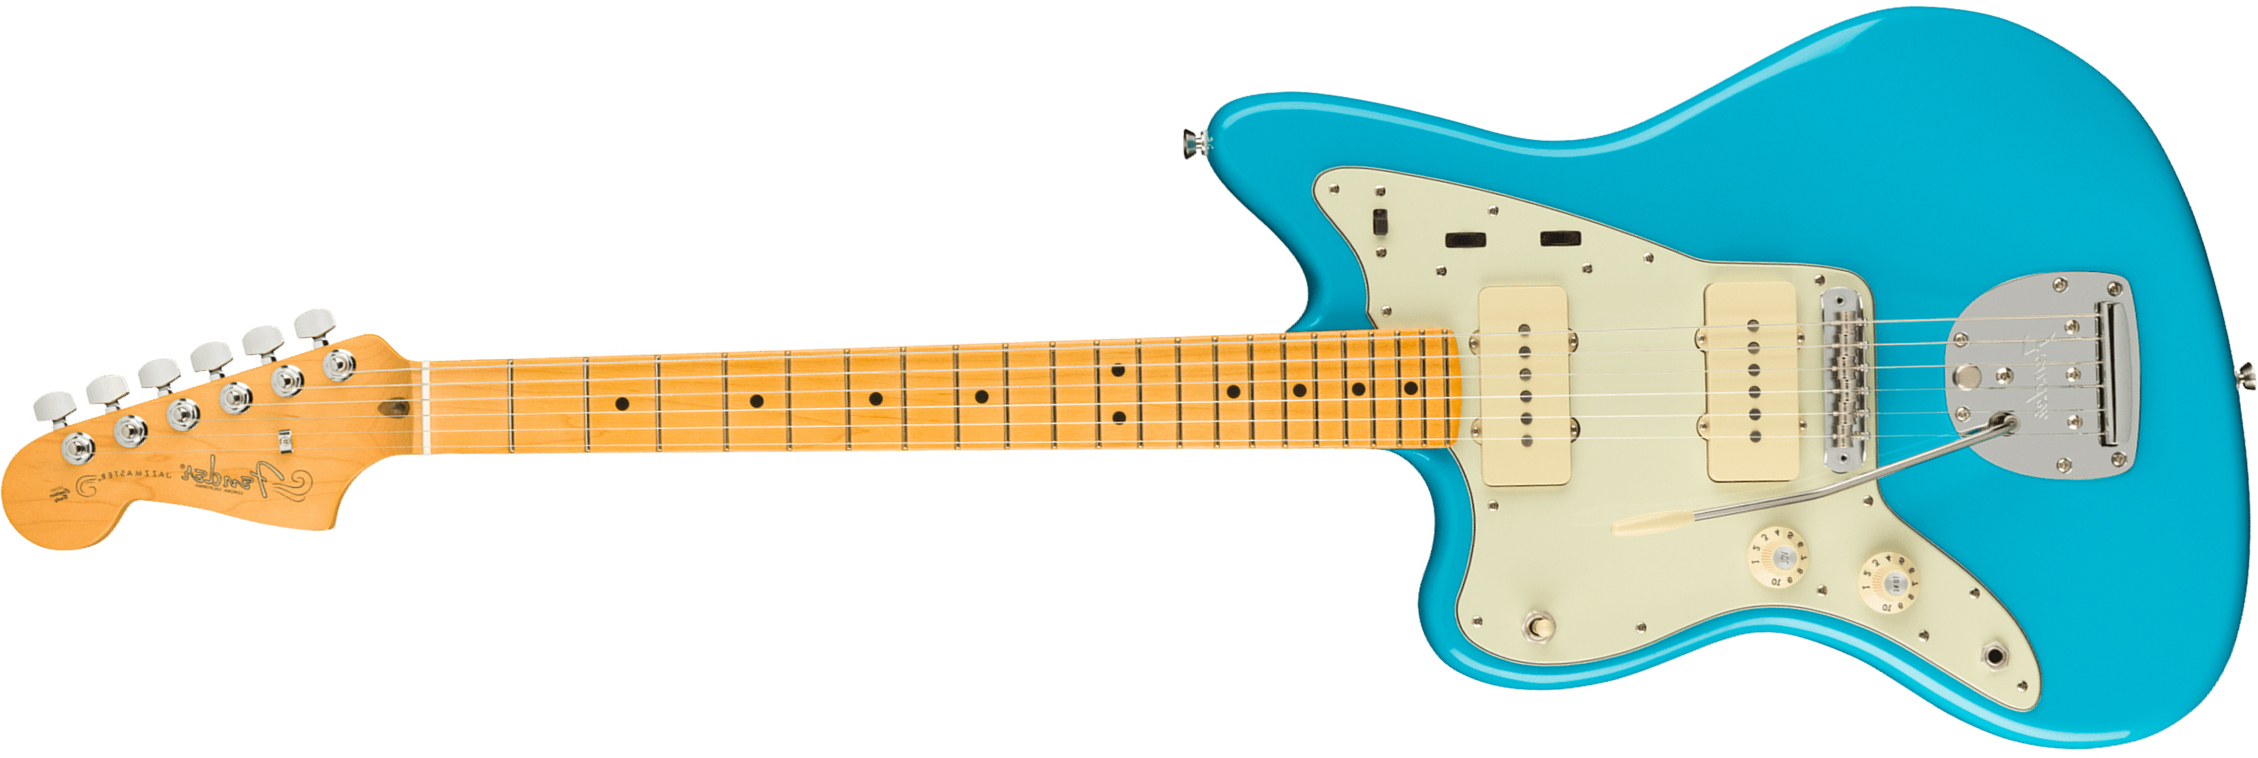 Fender Jazzmaster American Professional Ii Lh Gaucher Usa Mn - Miami Blue - Linkshandige elektrische gitaar - Main picture